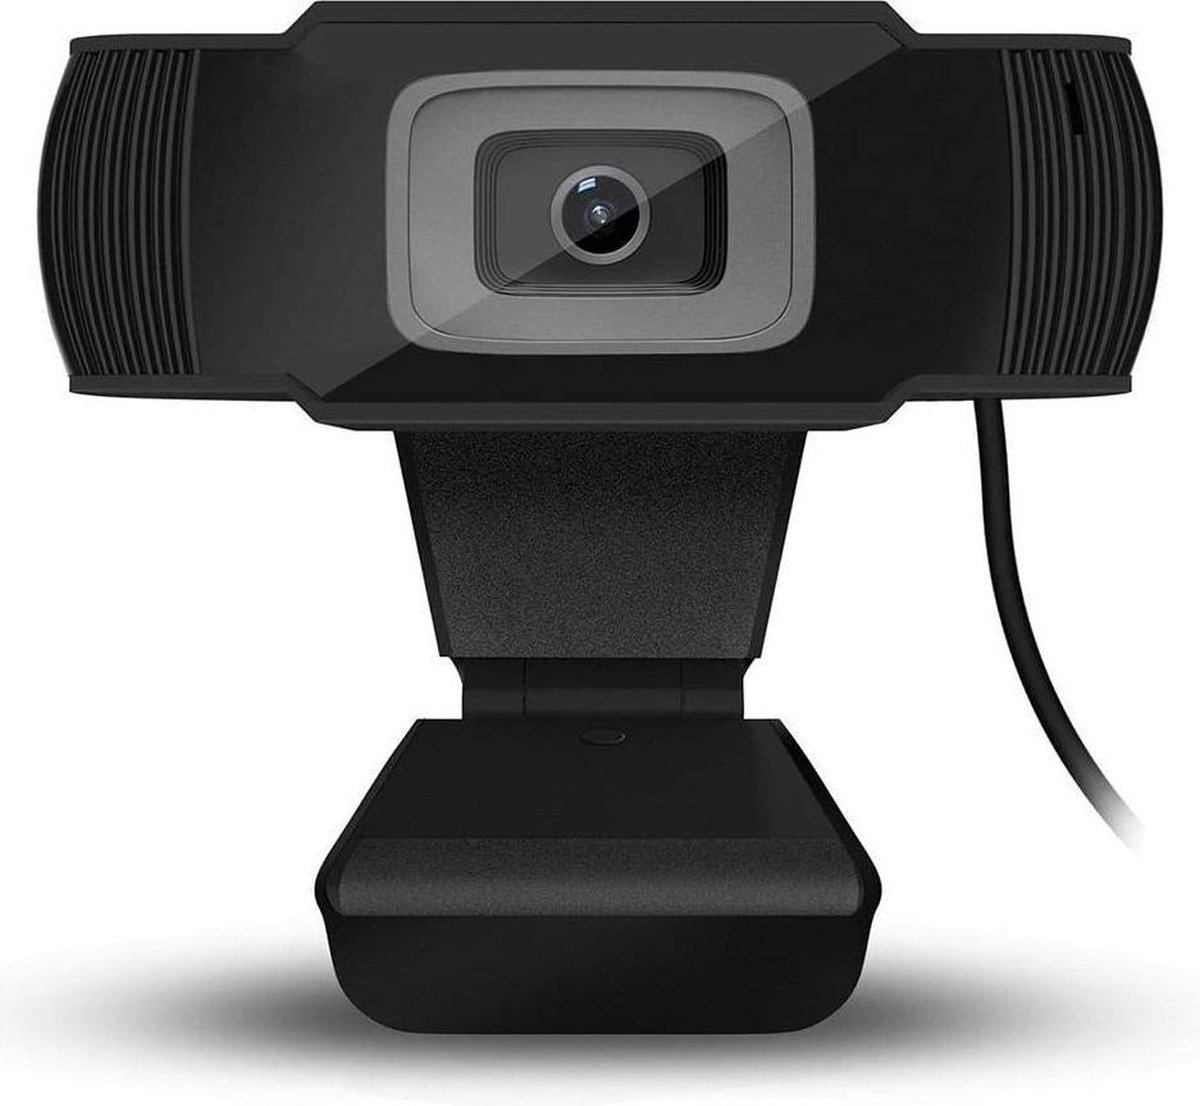 WEBCAM met ingebouwde microfoon (aux ingang nodig voor microfoon) - Web camera - HD camera - Microfoon - USB Webcam - Webcam voor PC - Camera - Webcams - Conference - Meeting - Call - Thuiswerken - Vergadering